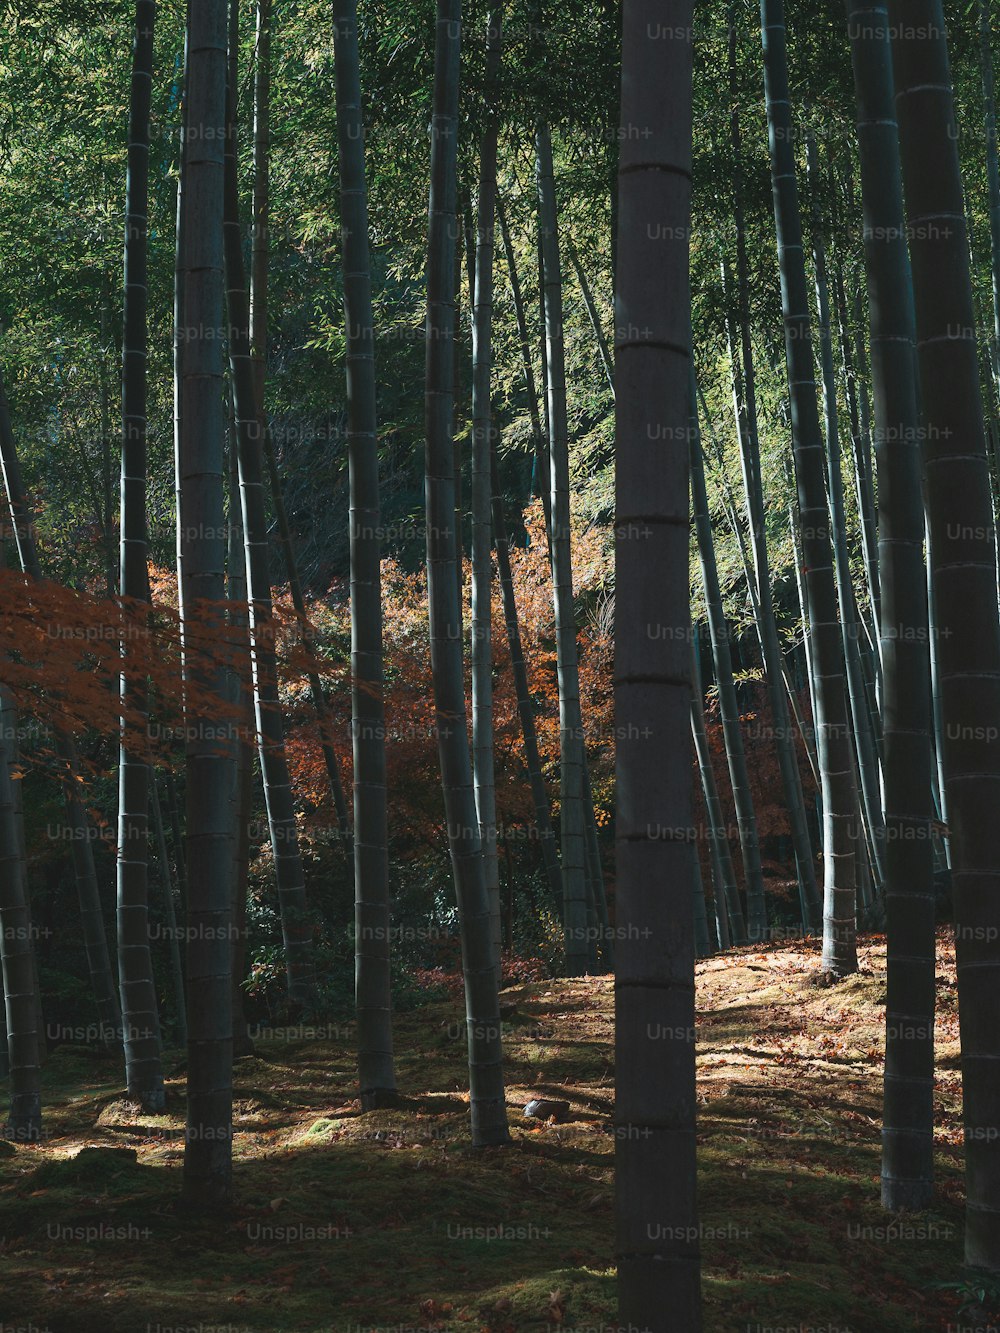 Un gruppo di alberi ad alto fusto in una foresta